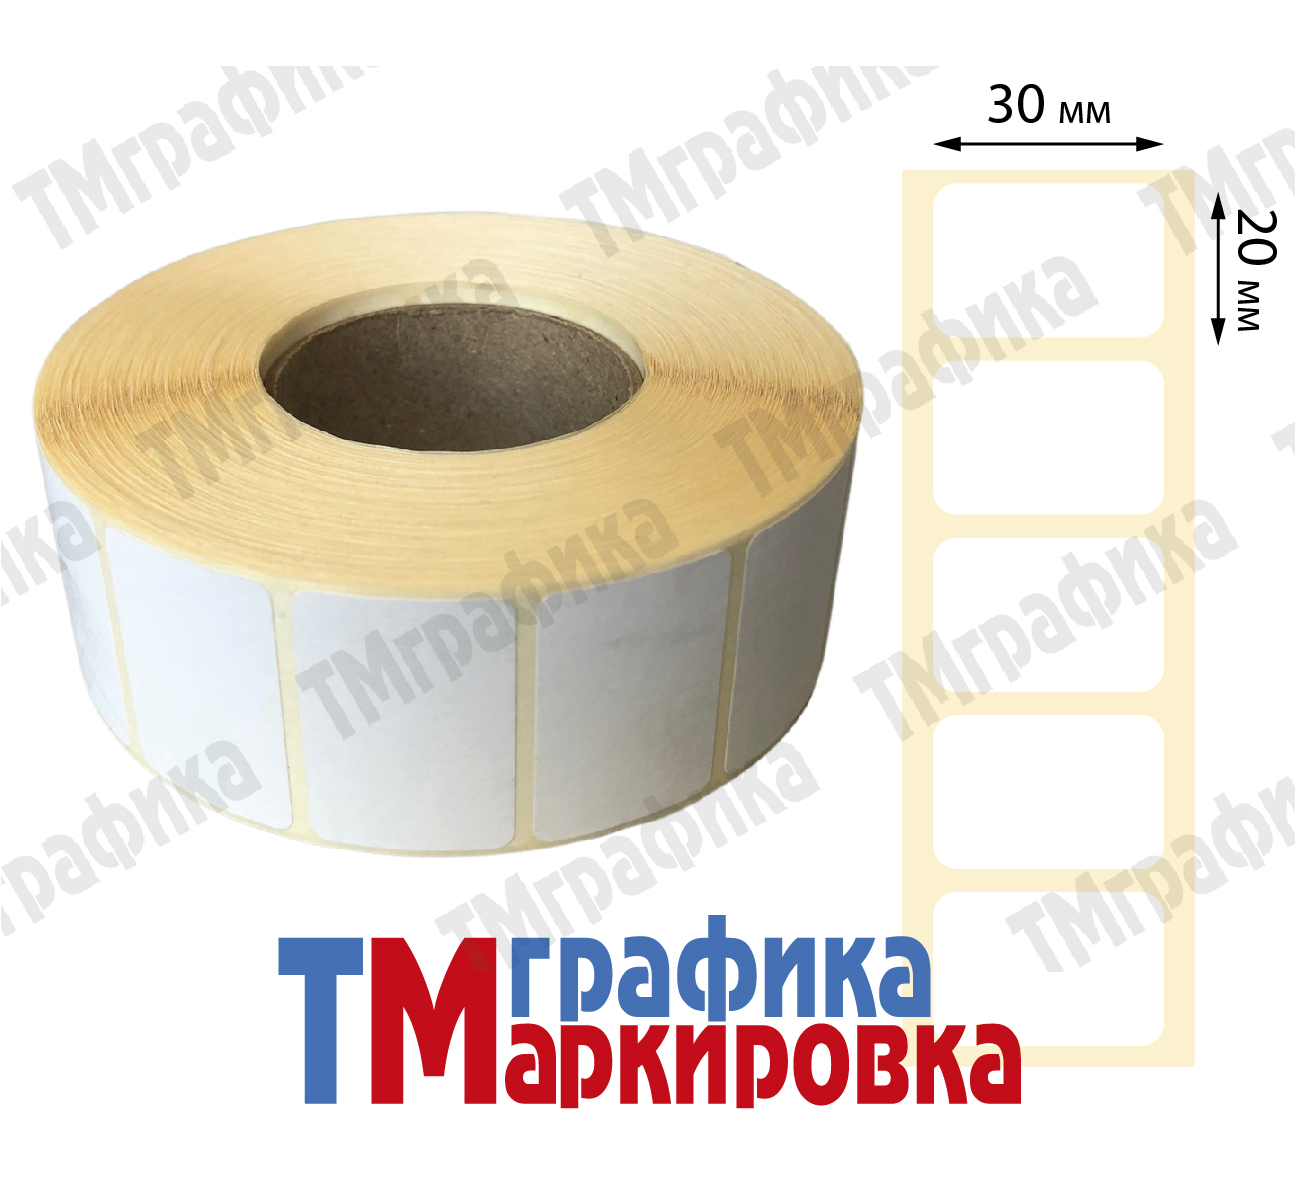 30х20 мм 2000 шт. полипропиленовые Термотрансферные этикетки - 415.14 руб.